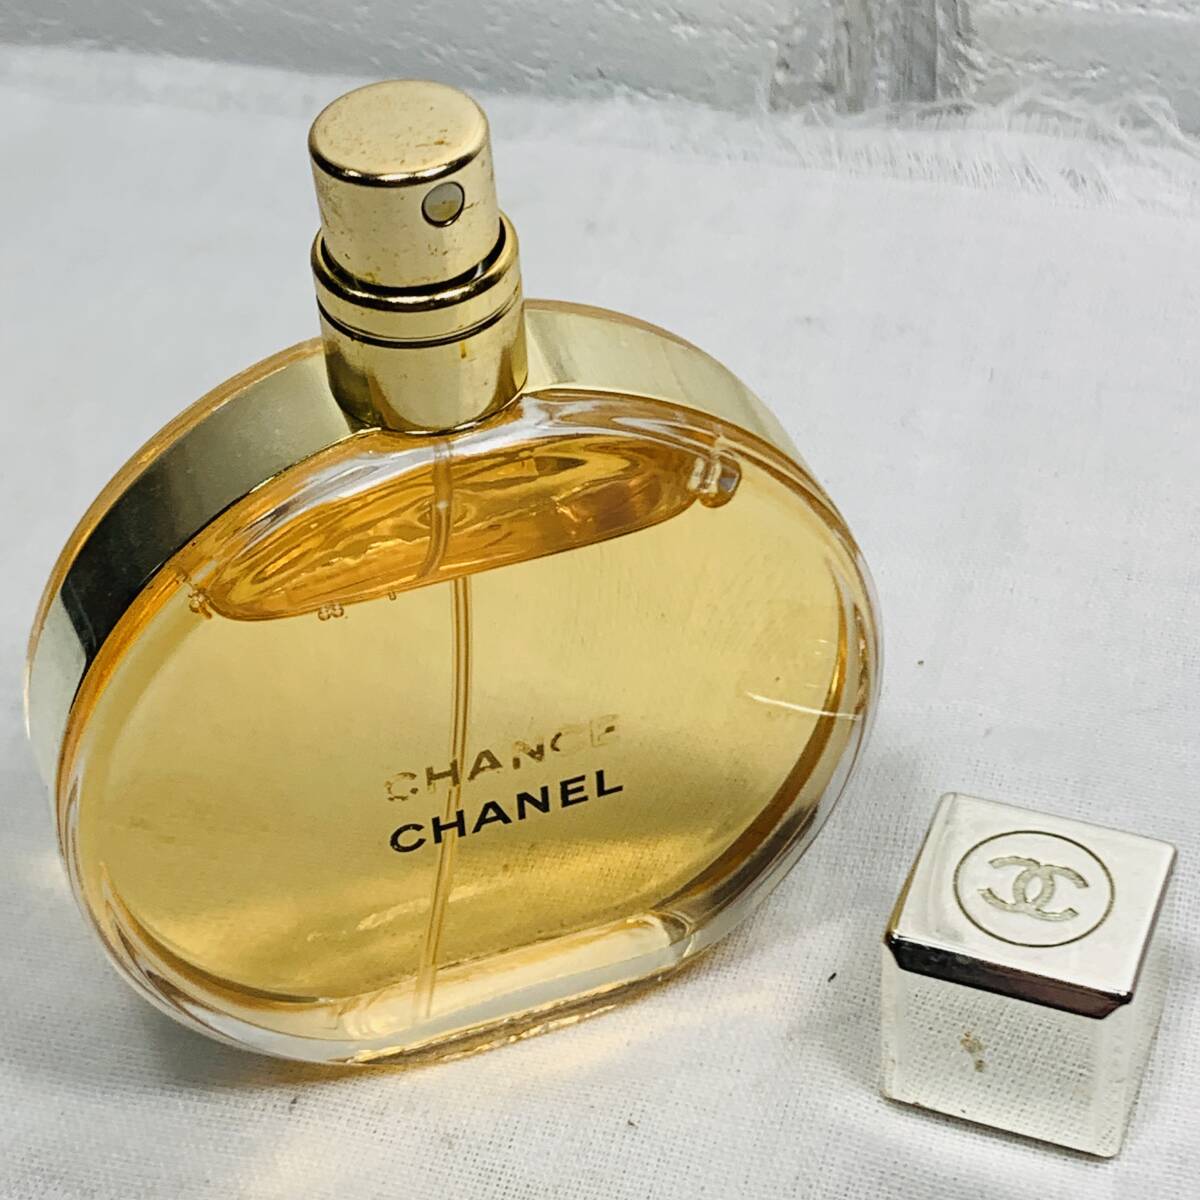 CHANEL シャネル CHANCE チャンス オードゥ パルファム 50ml 香水 USED品 の画像5